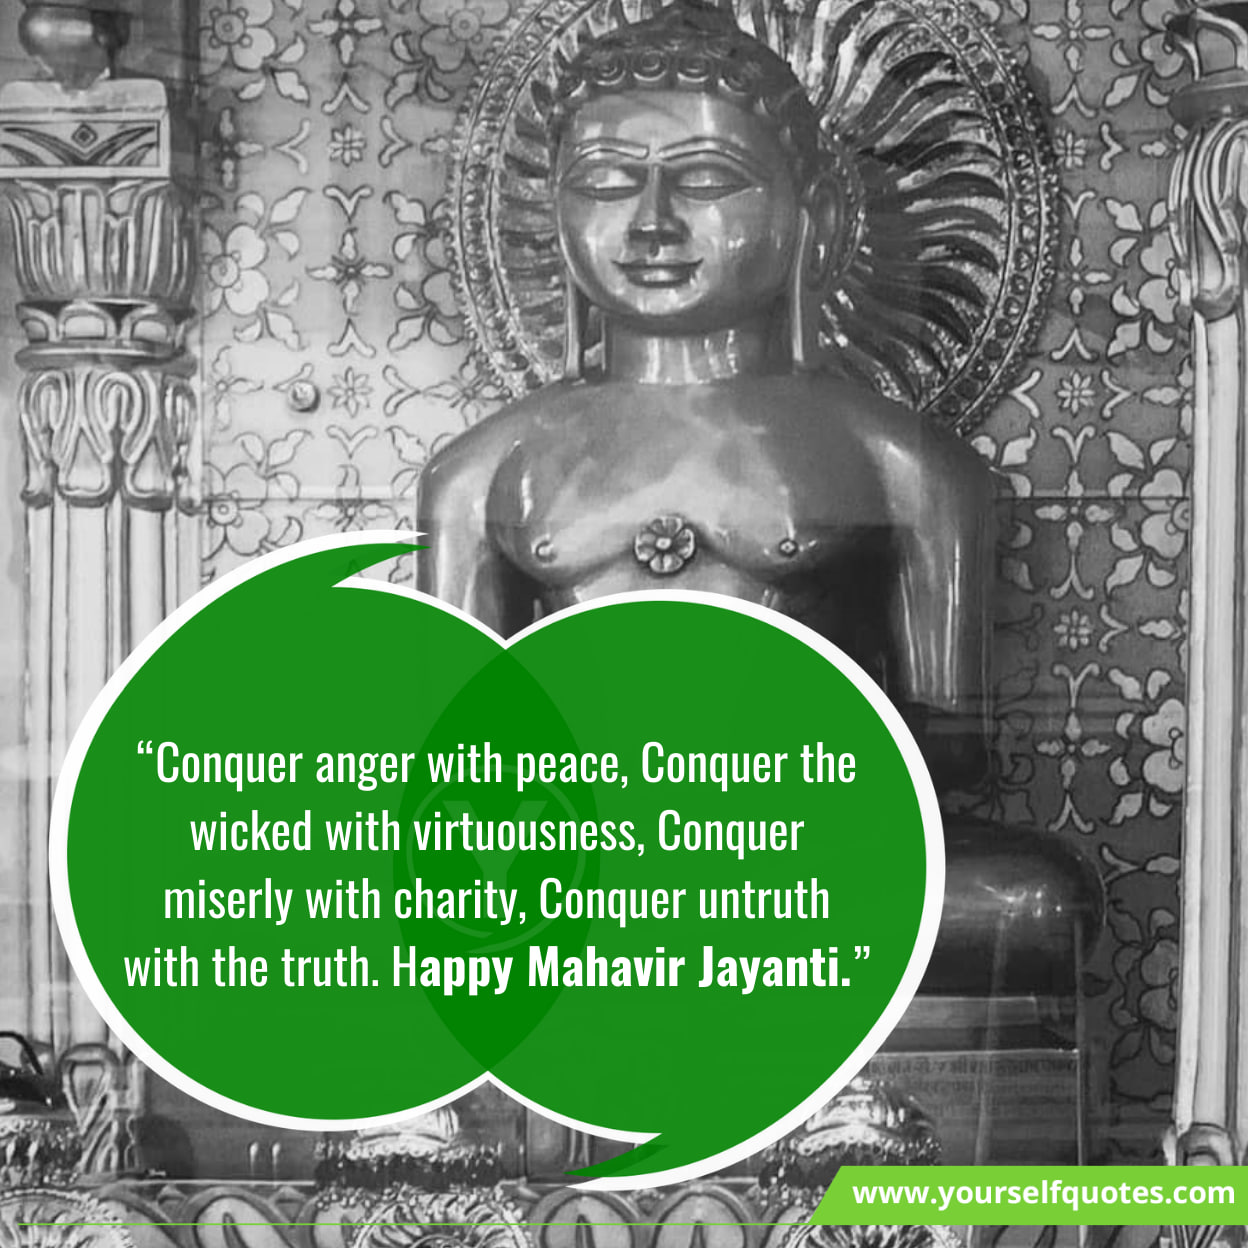 Mahavir Jayanti Wishes